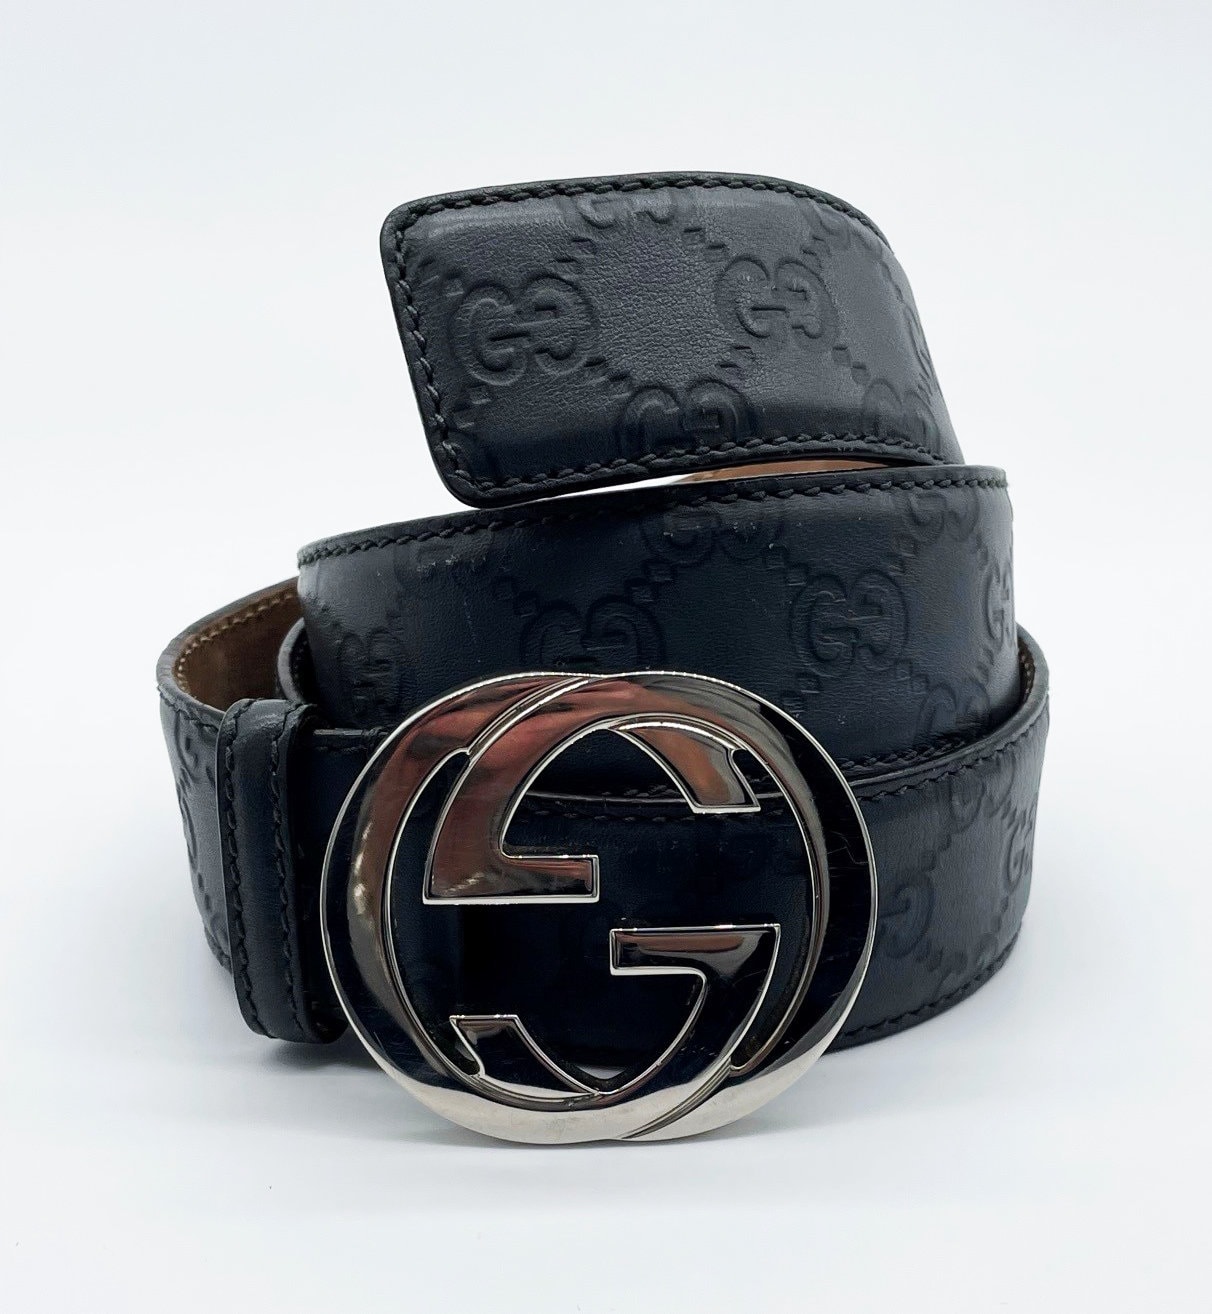 Used] Gucci belt beige brown silver interlocking 114984 525040 GG